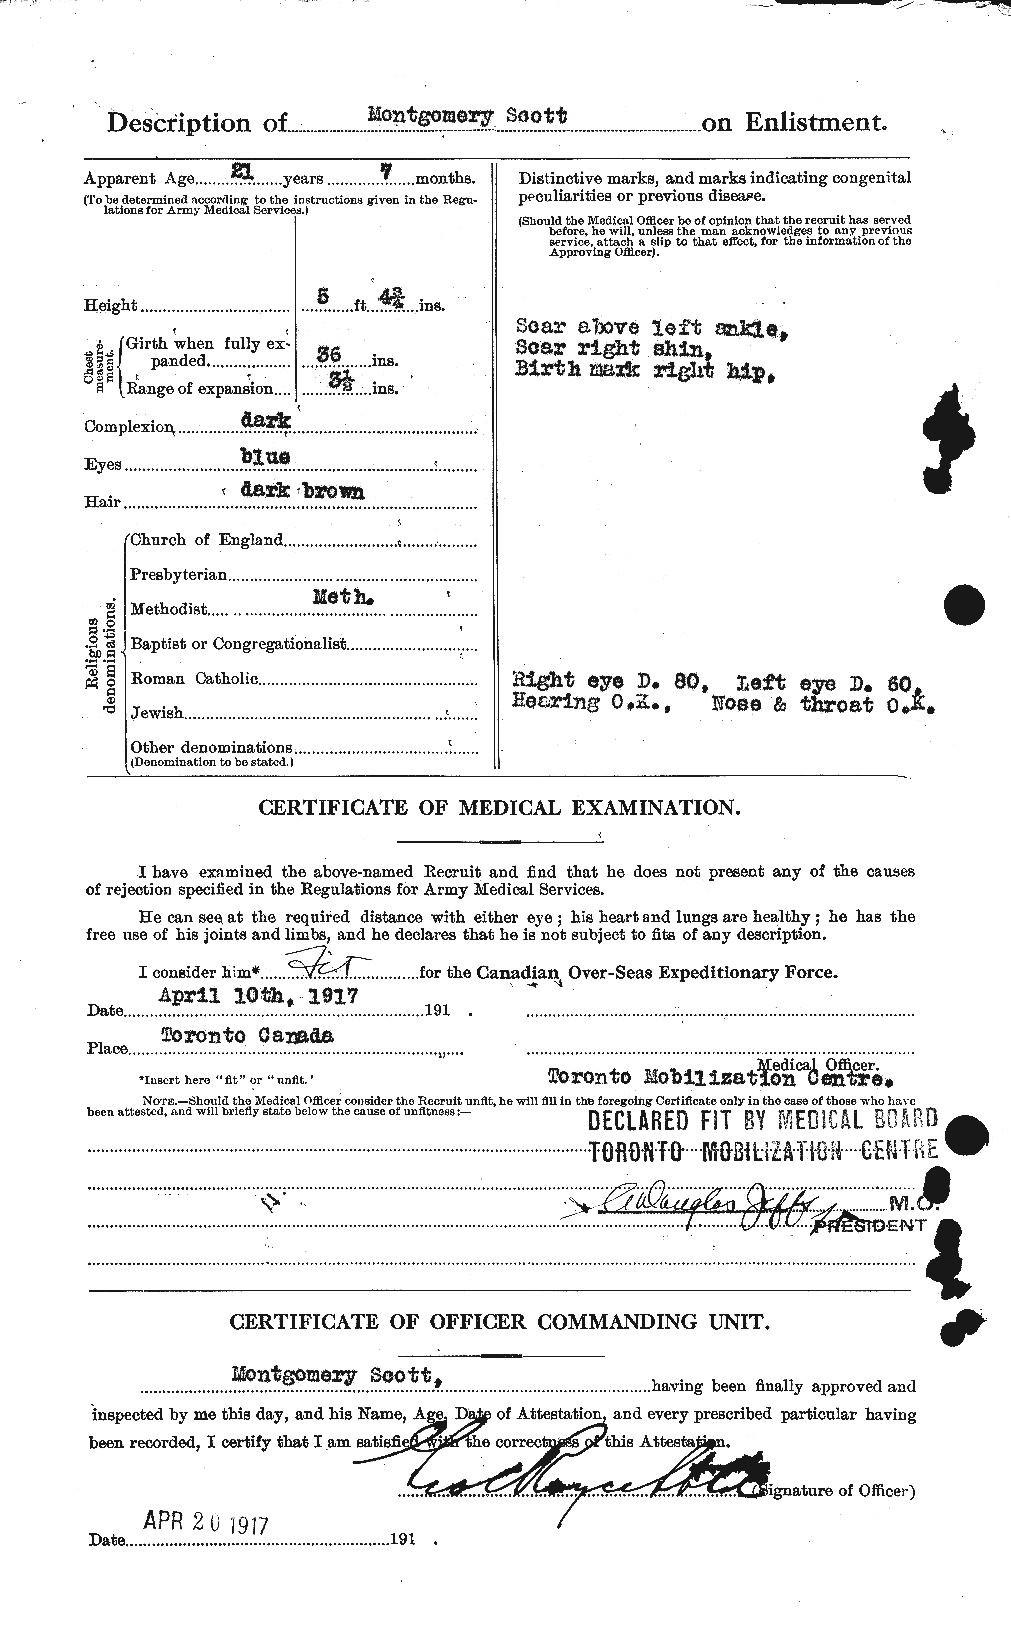 Dossiers du Personnel de la Première Guerre mondiale - CEC 083489b